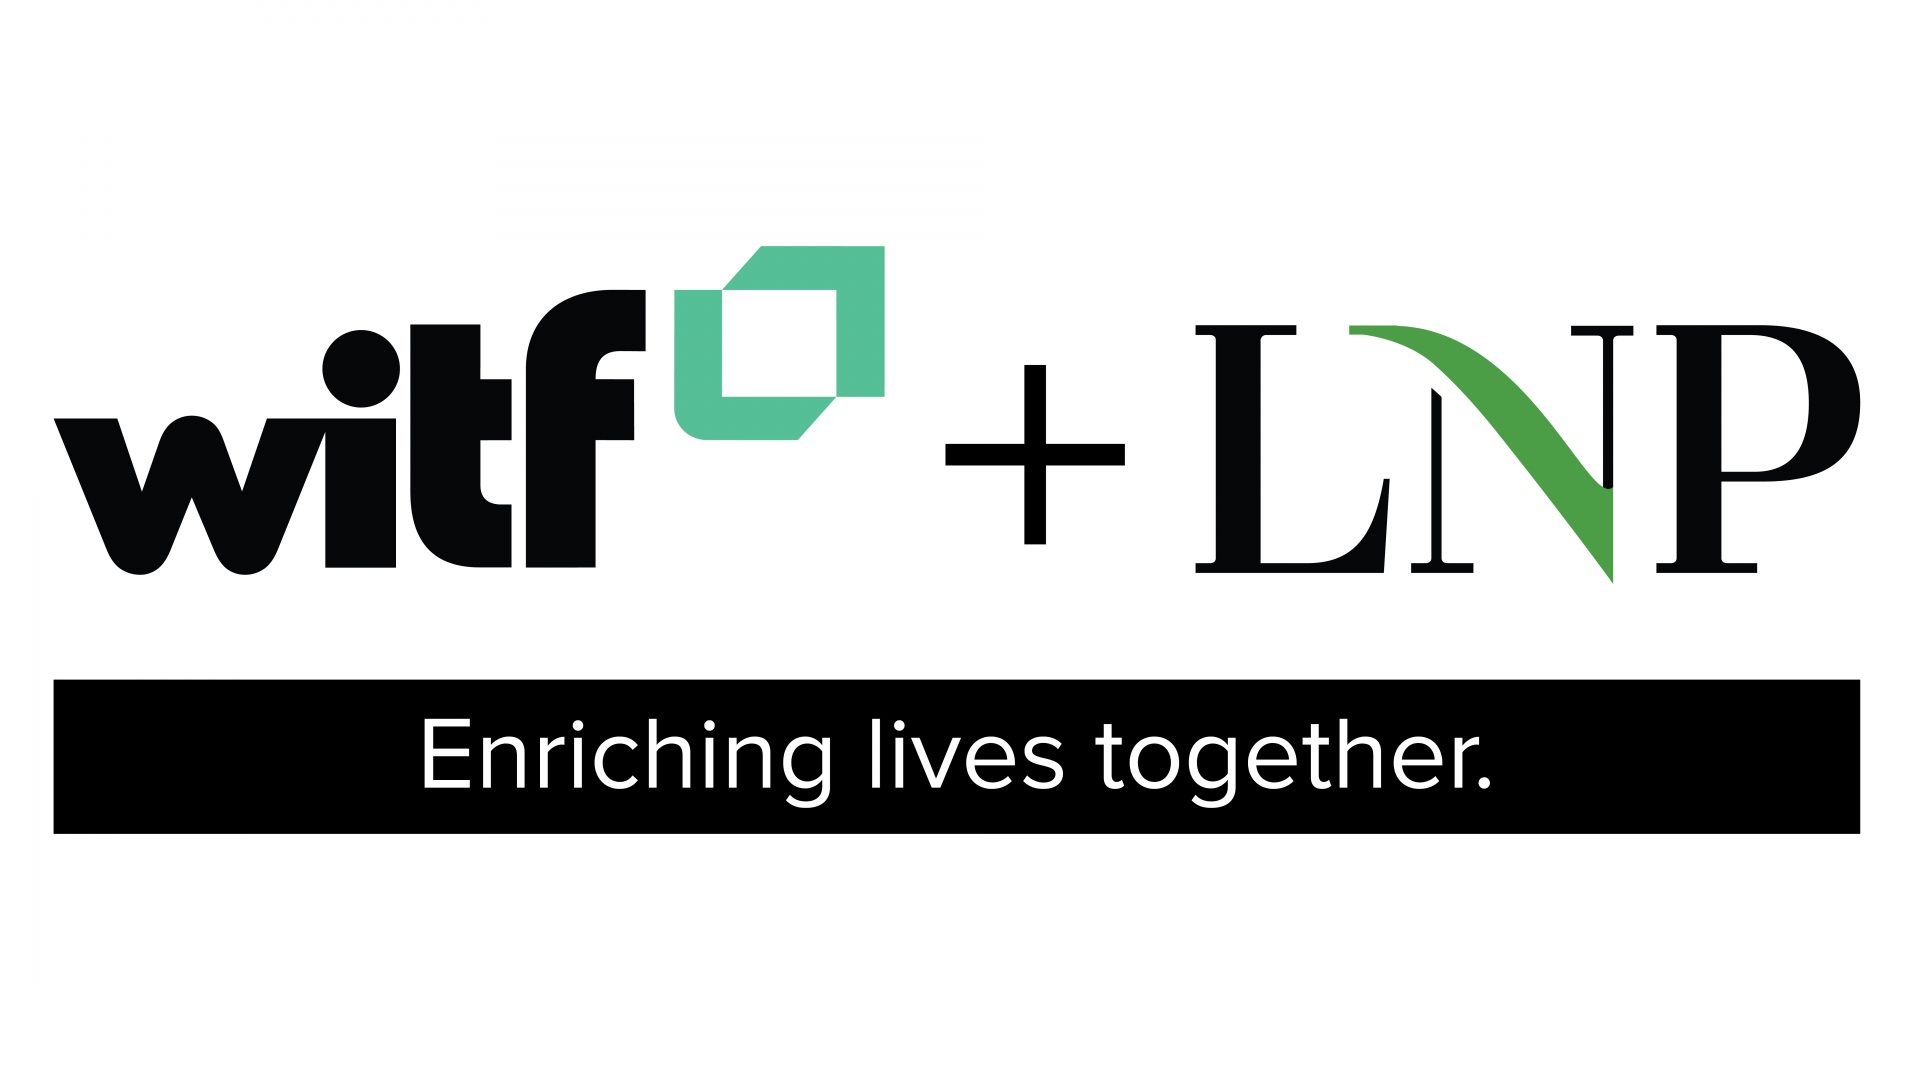 WITF and LNP logos